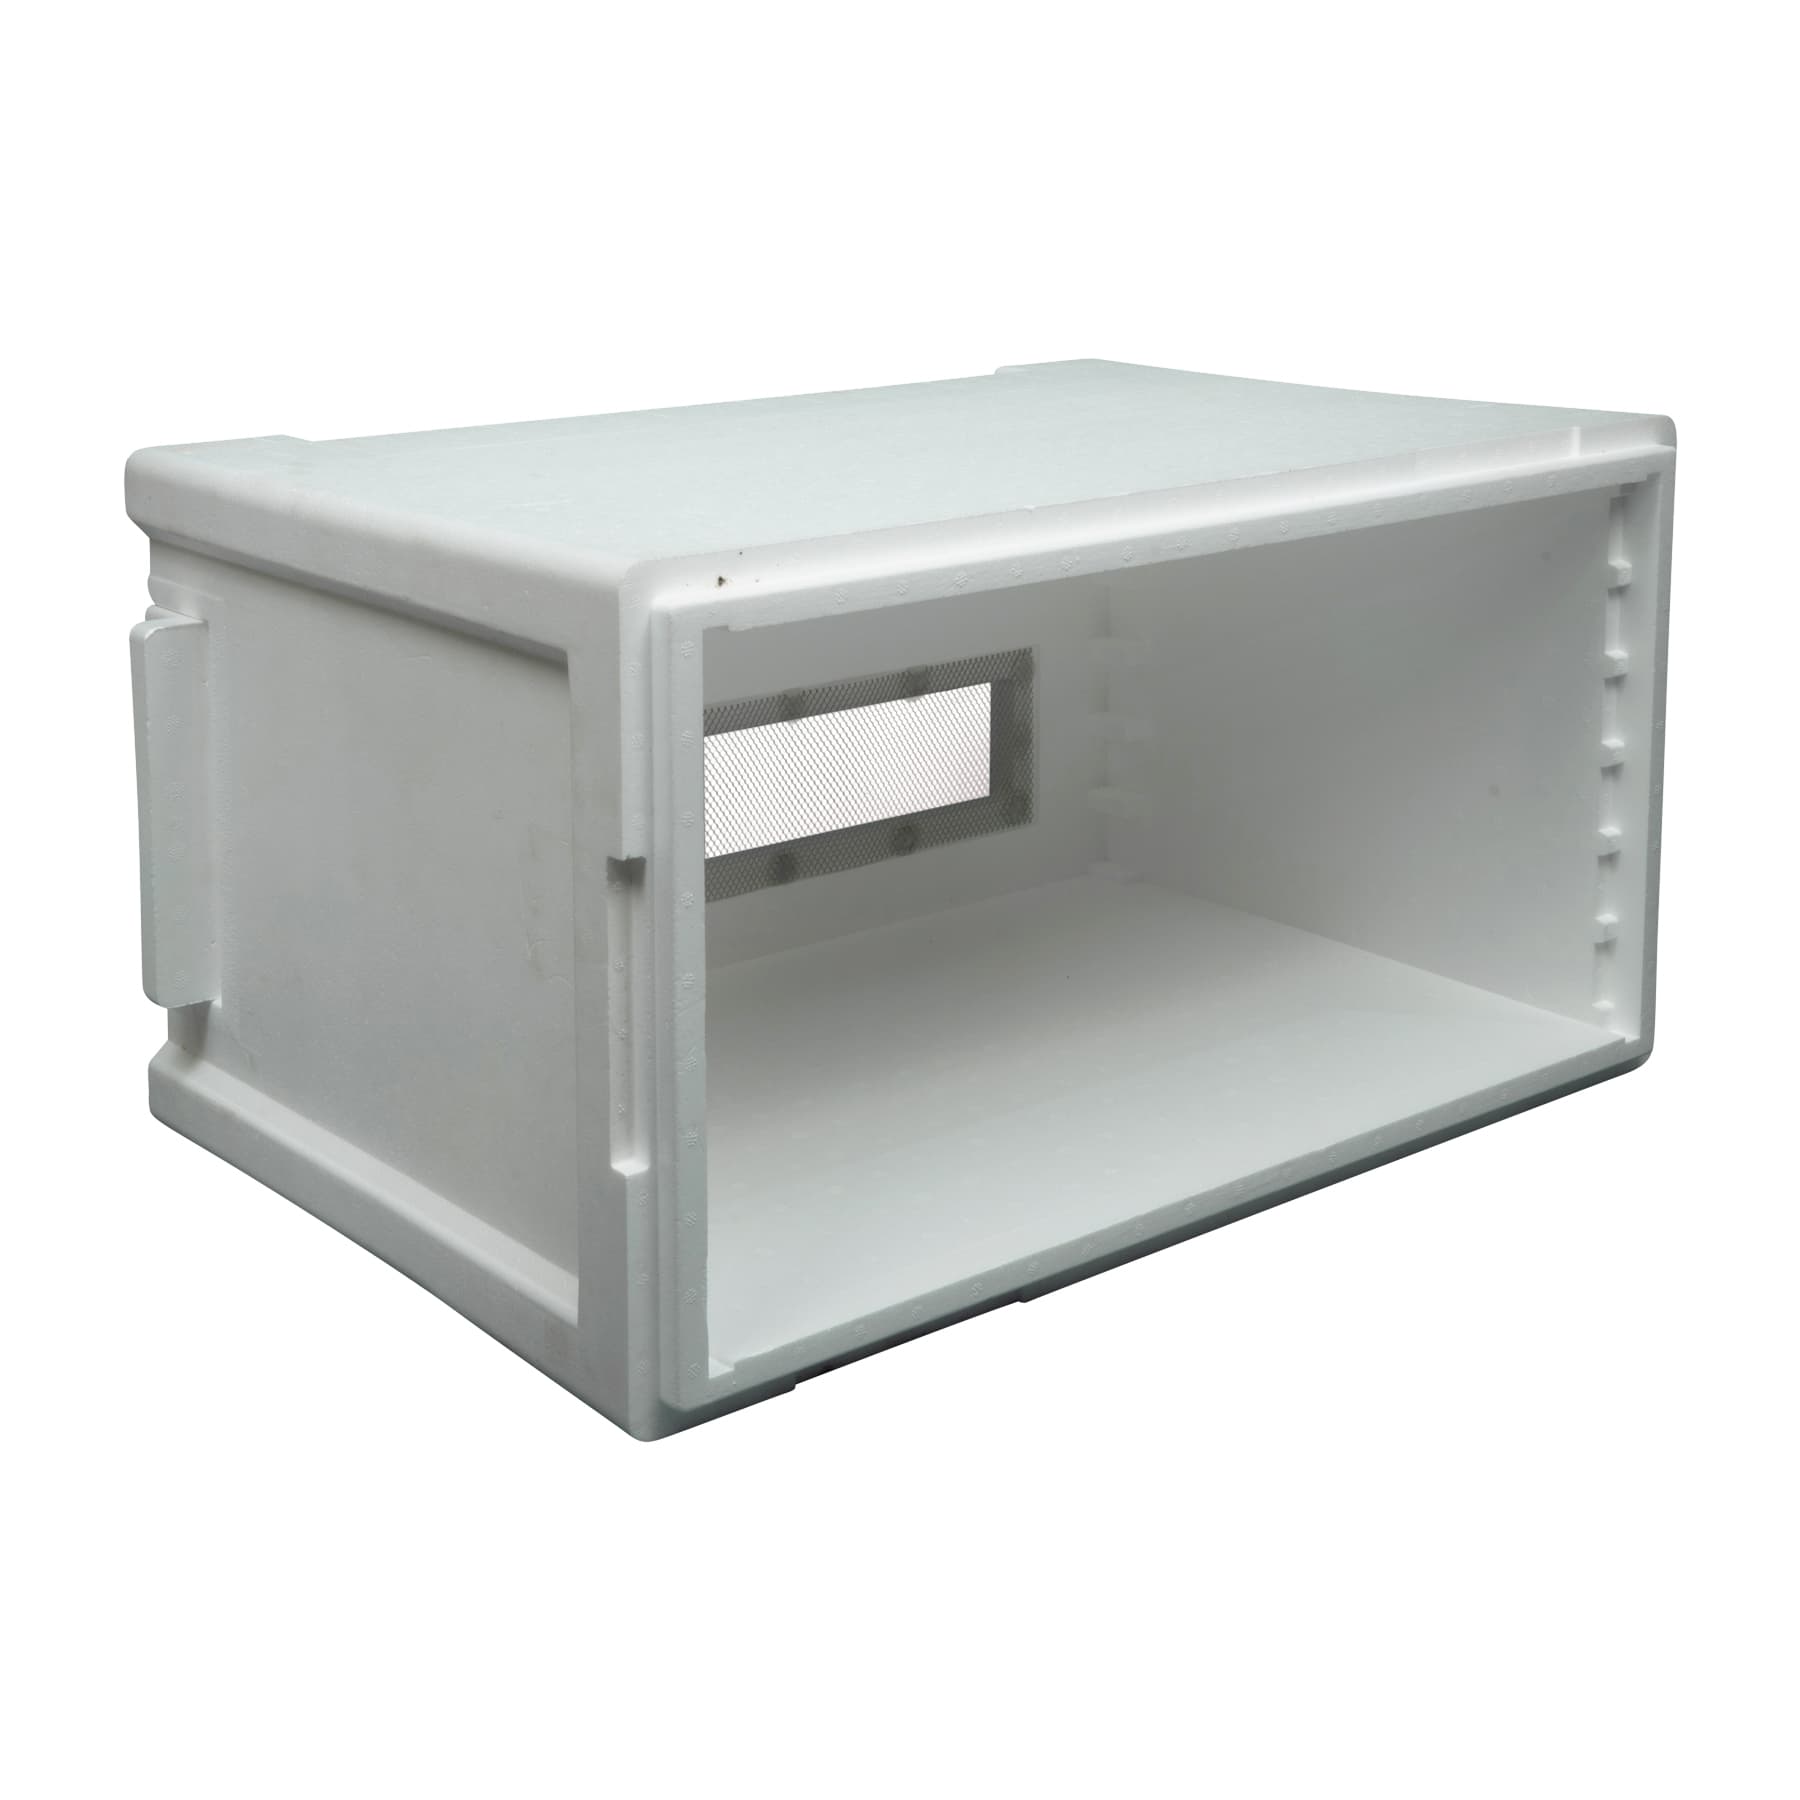 Stehr Ablegerkasten Simplex 6 Waben aus Styropor, einschiebbares Flugbrett, Auflageleisten aus Kunststoff und Deckel